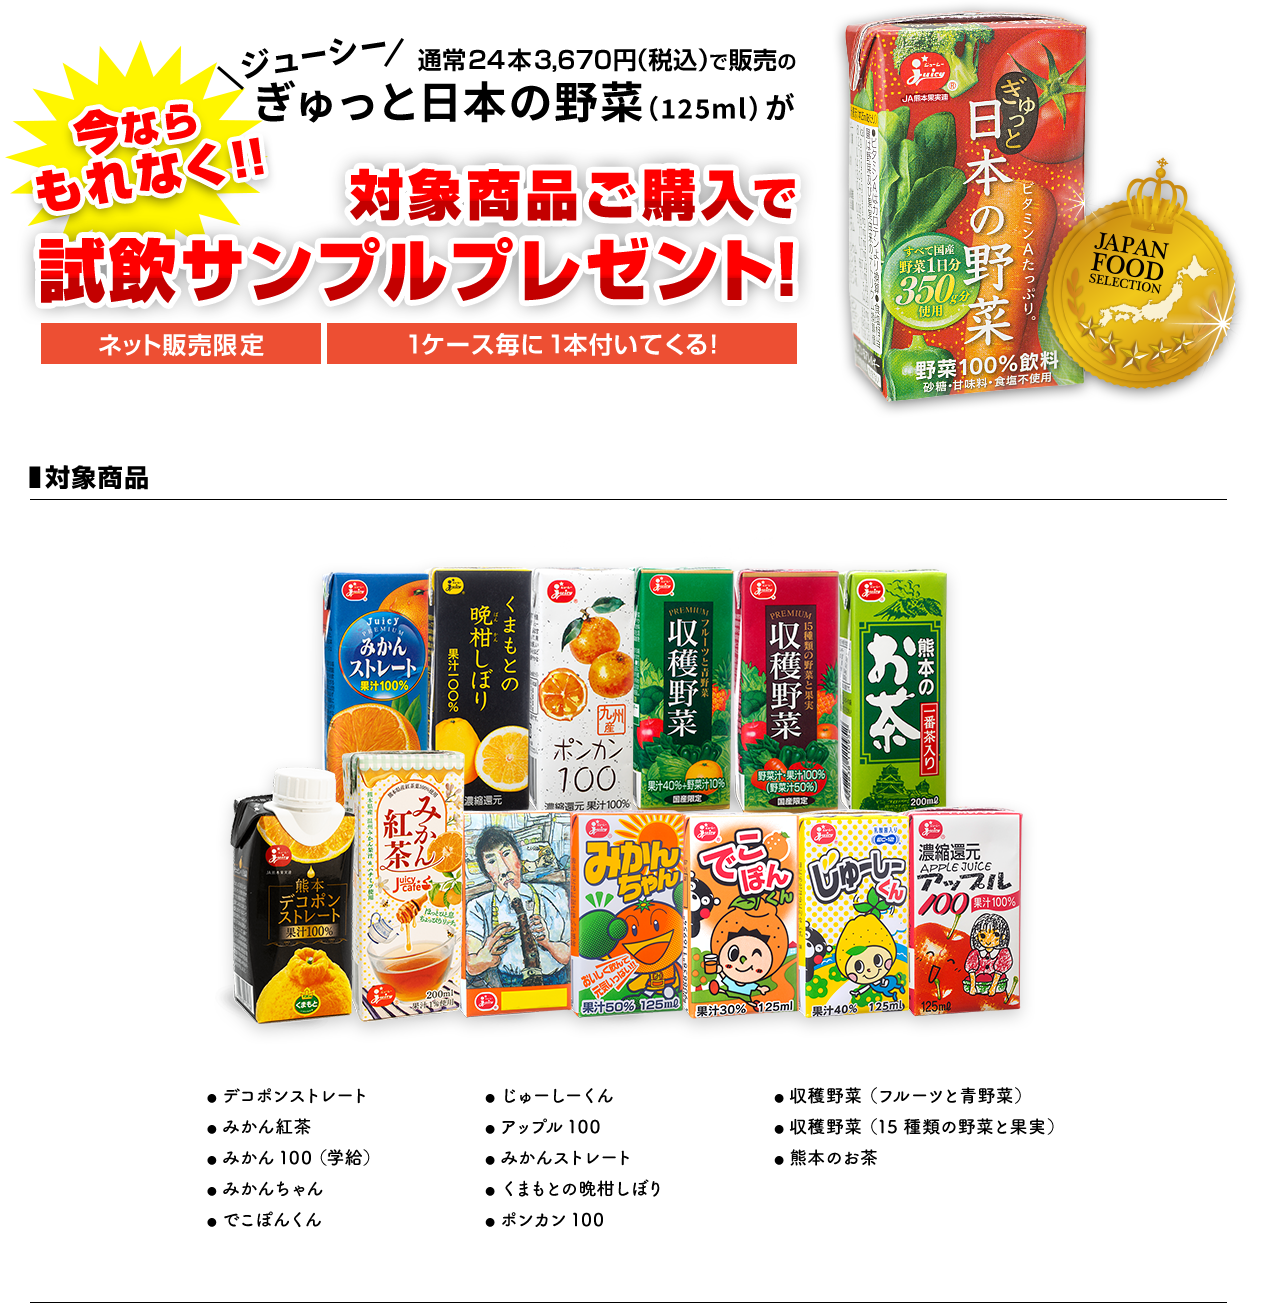 対象商品ご購入でぎゅっと日本の野菜を1本プレゼント！